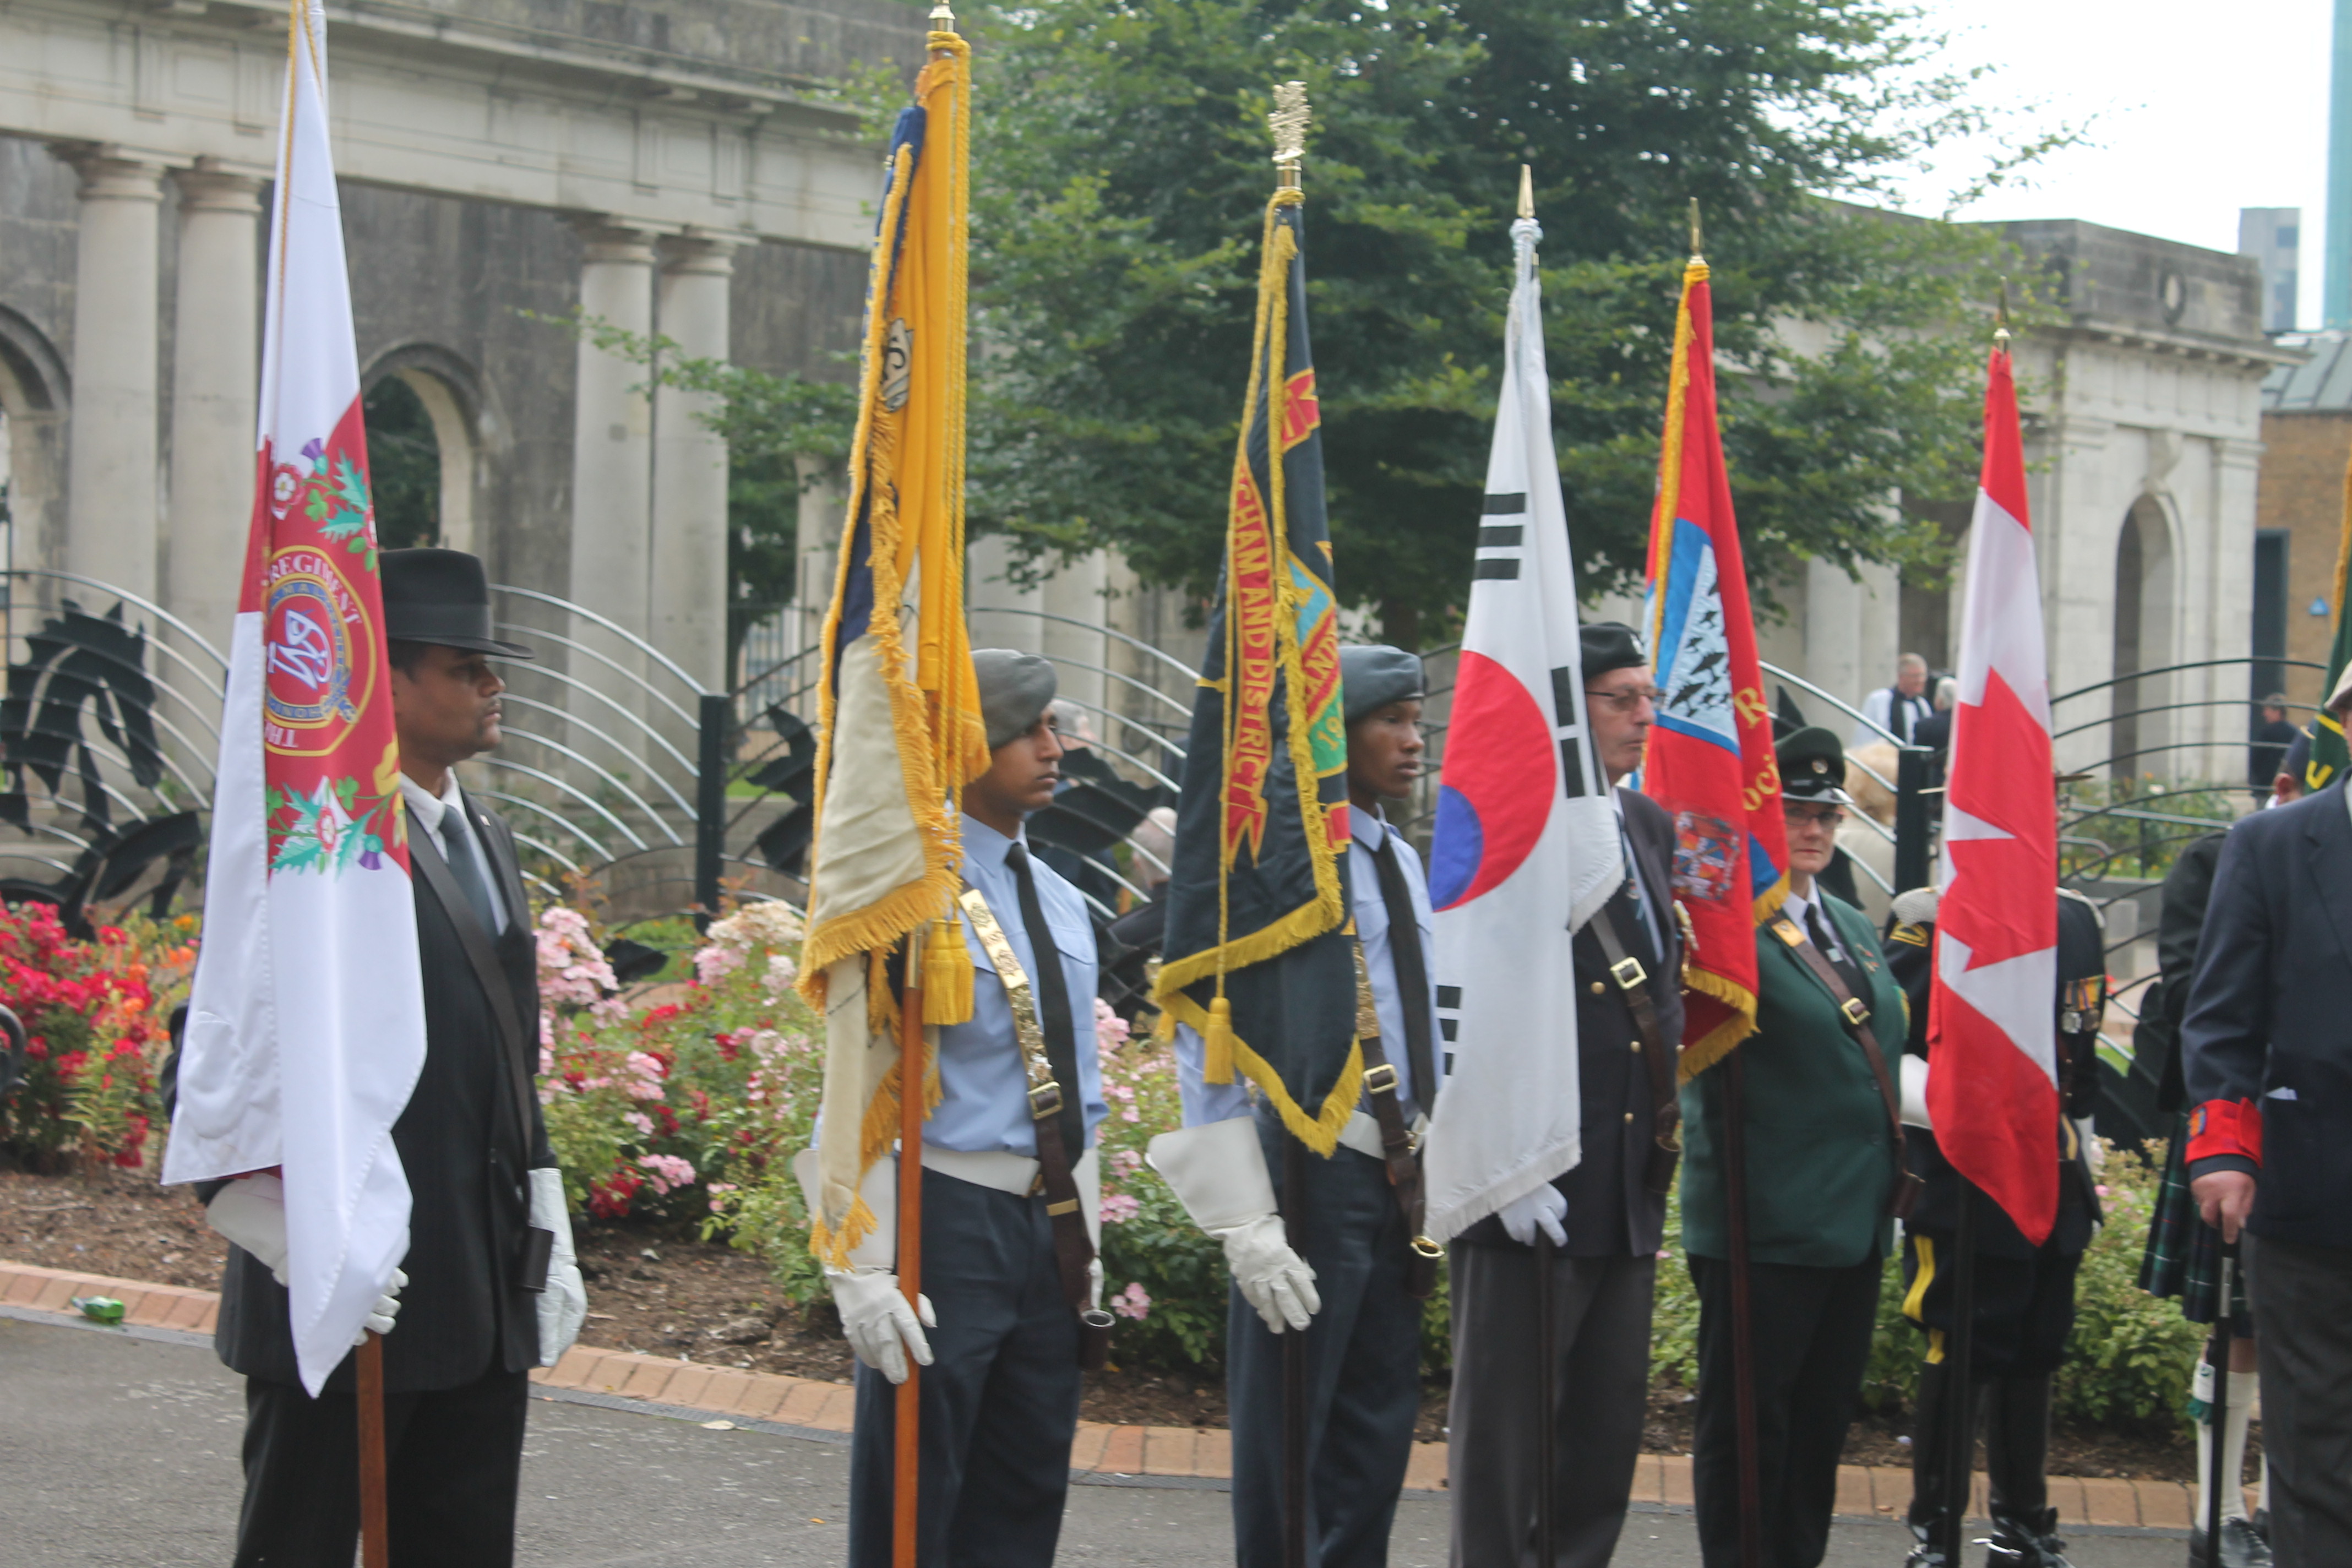 Battle of Brittain Memorial Service